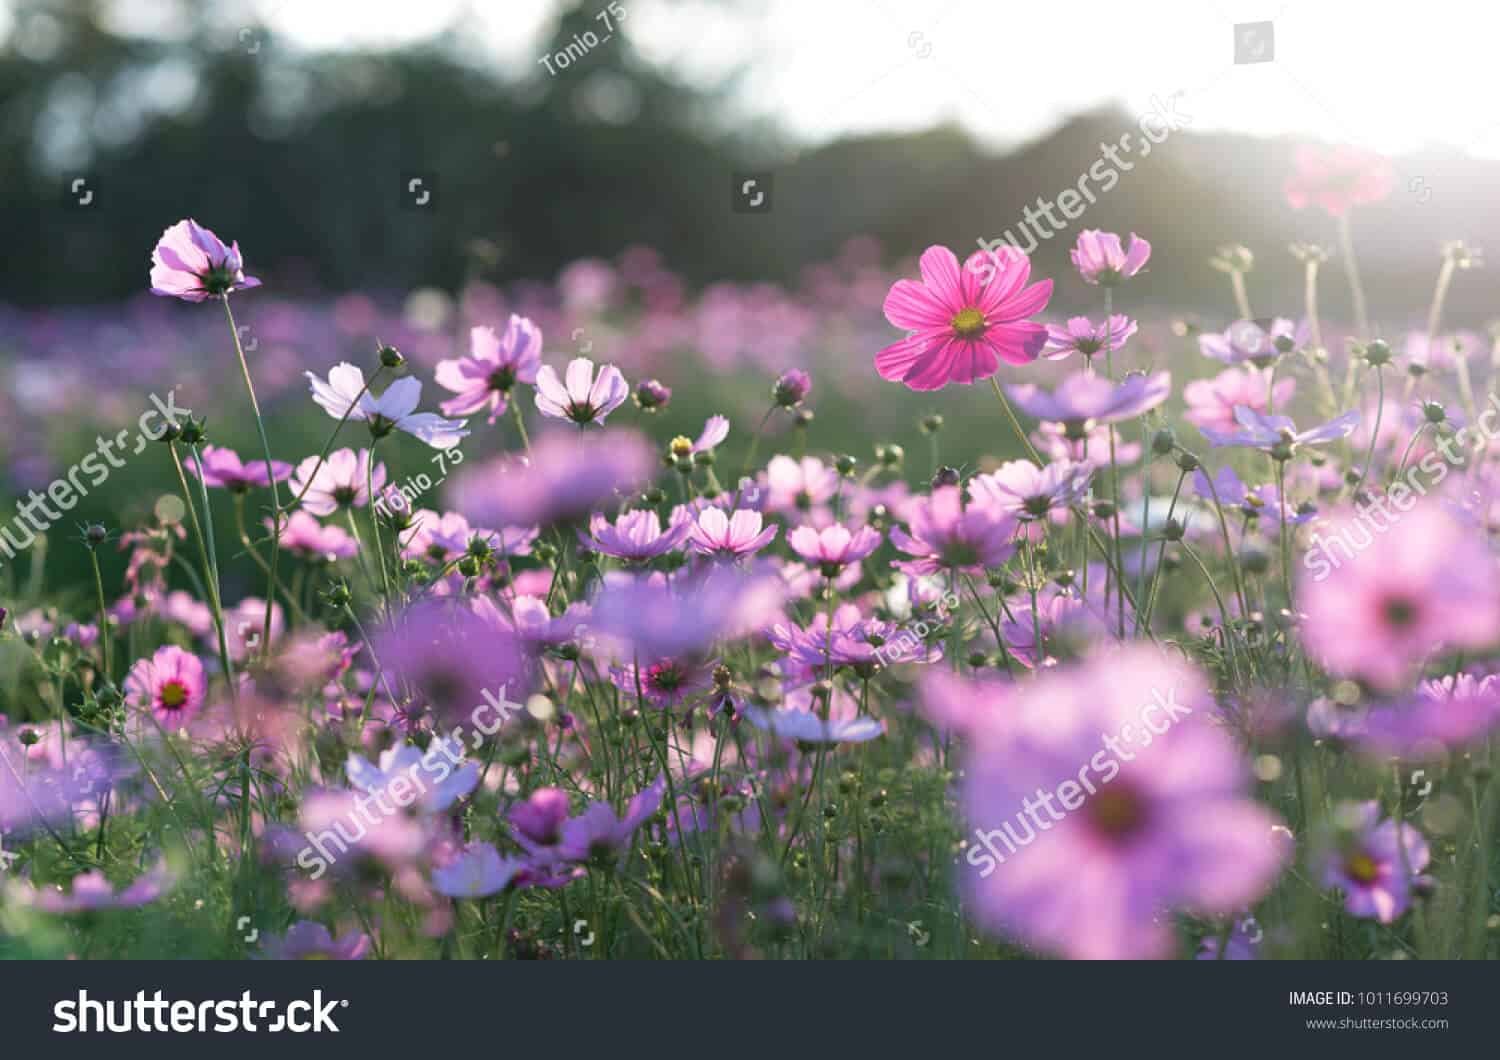 28 triệu hình ảnh hoa chất lượng cao dành cho ngày 8/3 trên Shutterstock